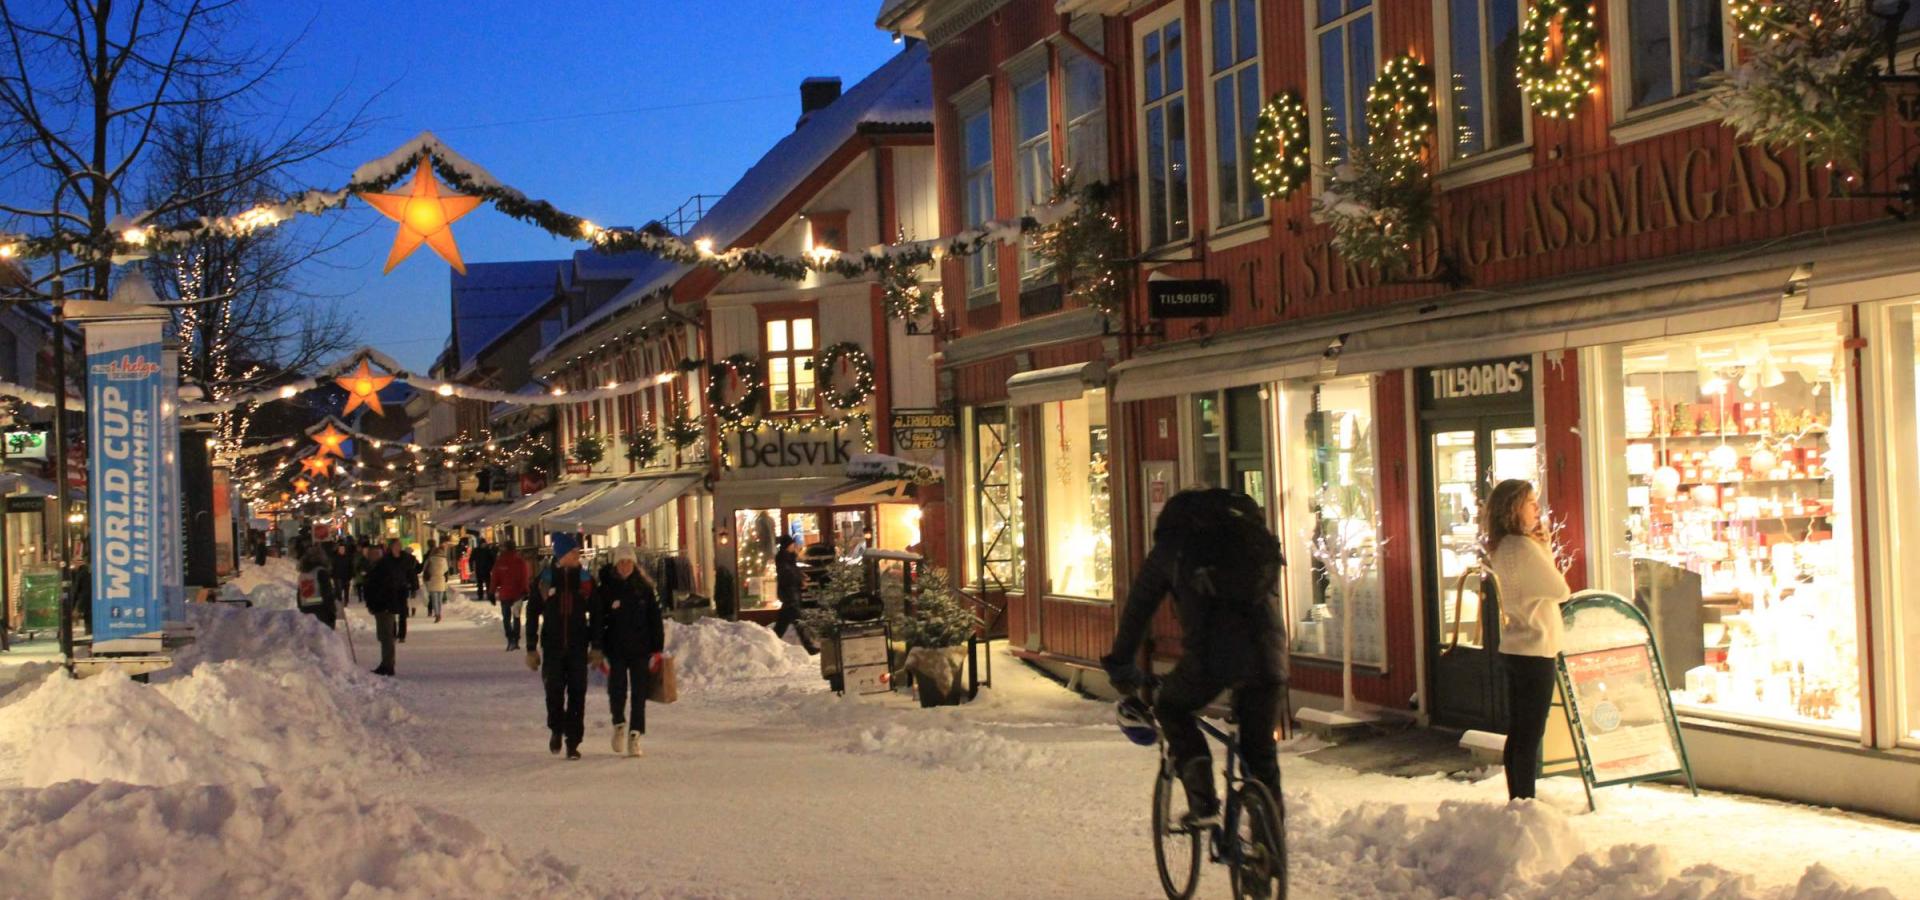 Julebyen Lillehammer